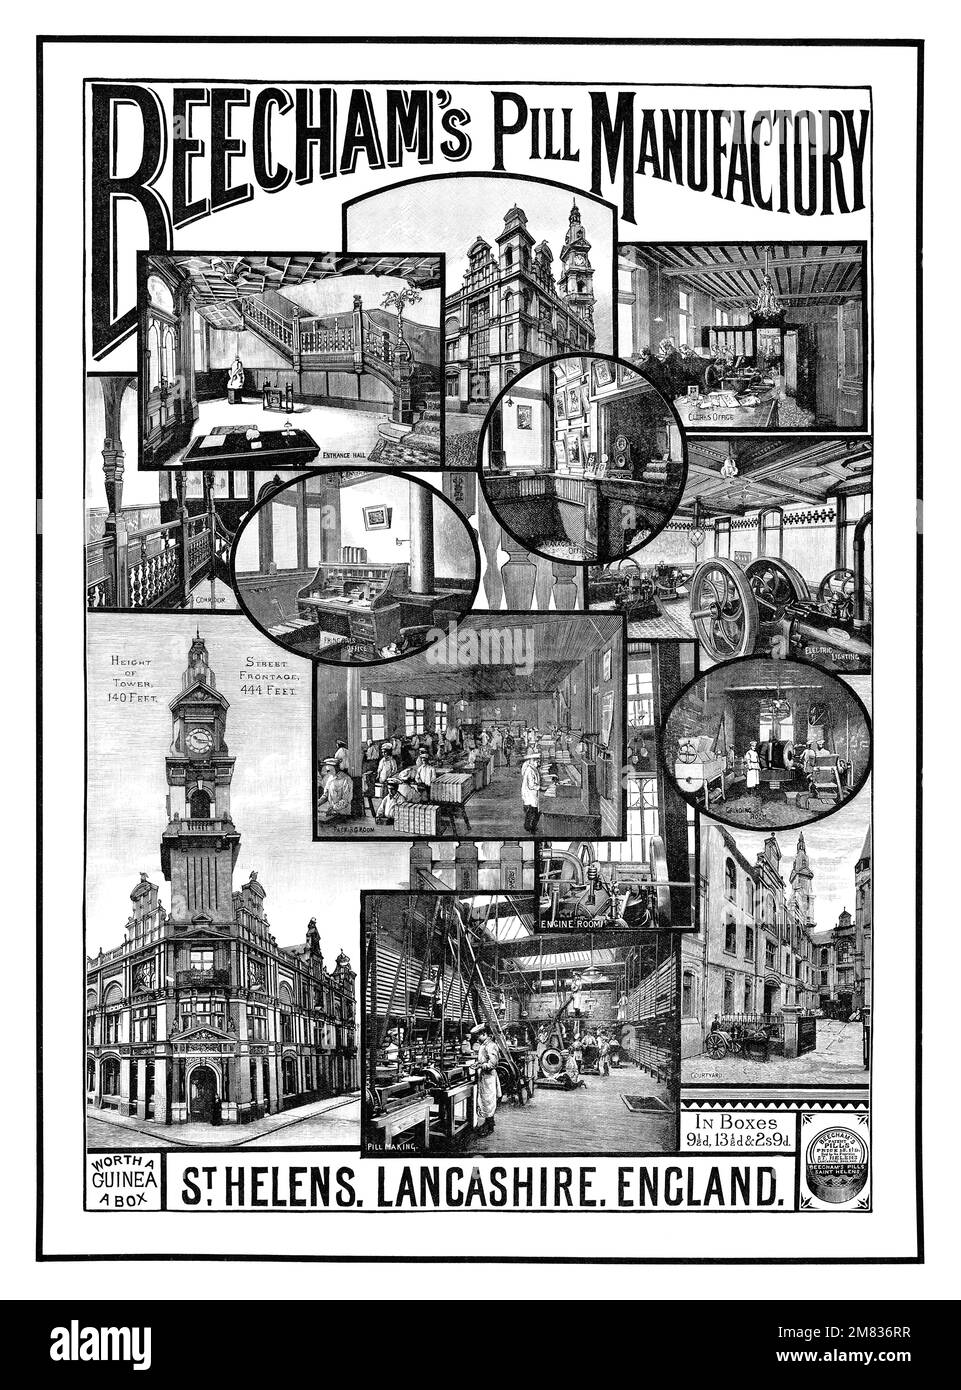 1892 britische Werbung für Beecham's Pills, die die Fabrik zeigt. Stockfoto